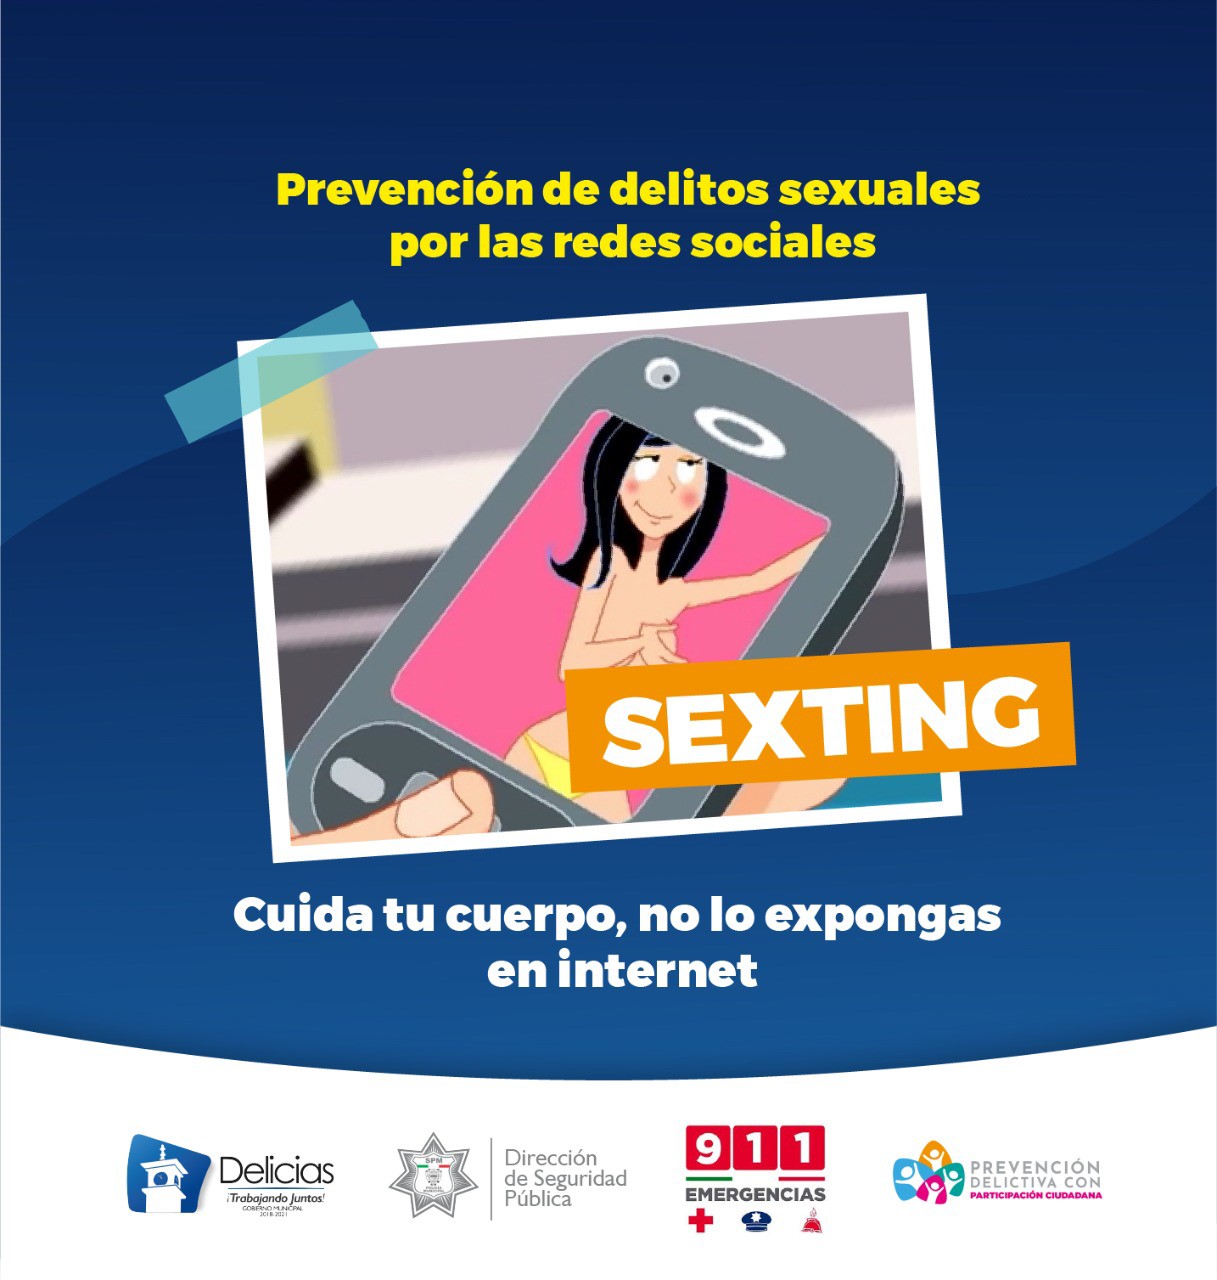 Prevenci N Delictiva De Delicias Da Recomendaciones Para Evitar El Sexting Encorto News